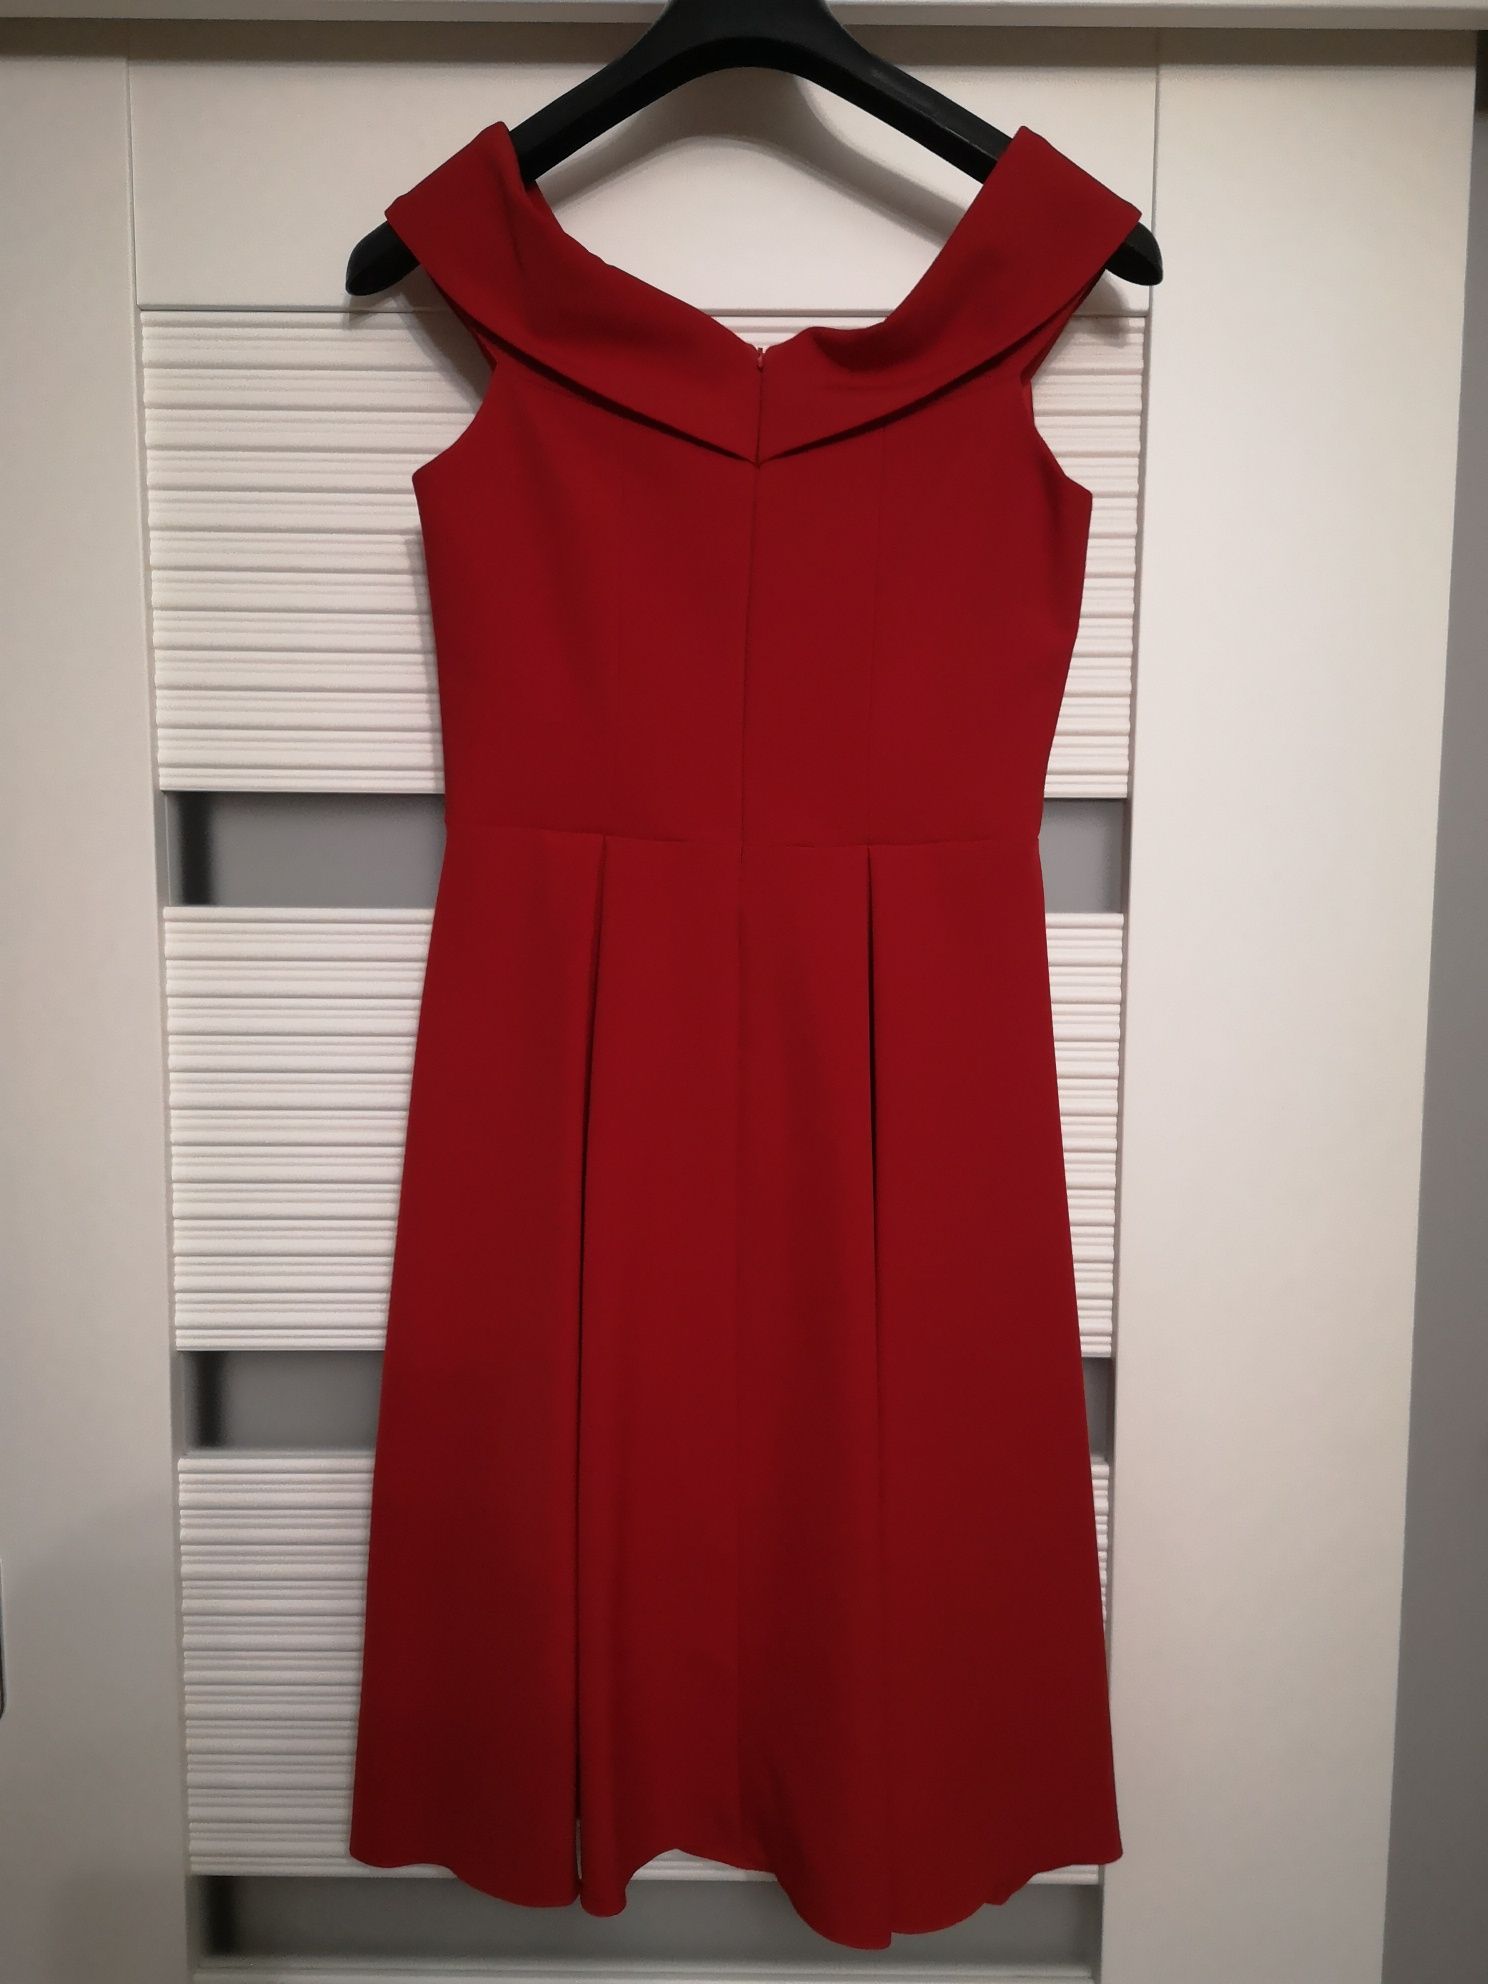 Czerwona sukienka na sylwestra, bal lub wesele